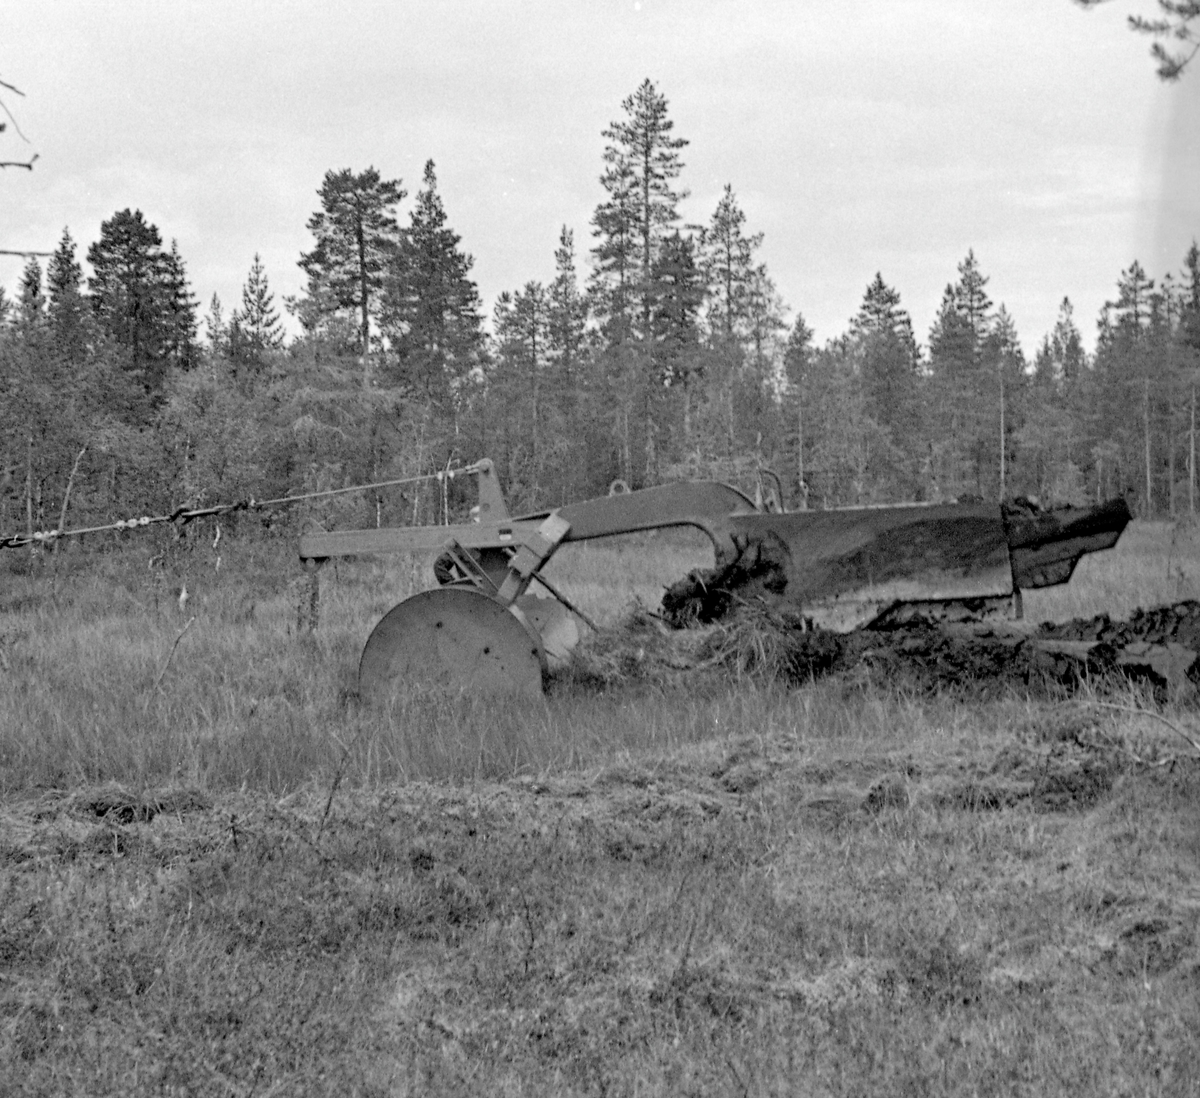 Grøfteplog, en såkalt «Lokomo-plog», fotografert under forsøksdrift på Grue Finnskog sommeren 1957.  Her ble både Langmoens skoger og familien Bredesen-Opsets skoger stilt til disposisjon for slike forsøksdrifter.  Grøfteplogen veide 3,8 tonn og ble trukket ved hjelp av en beltetraktor med bakmontert vinsj.  I front hadde plogen et par brede stålhjul, som skulle hindre at den grov seg ned i myra.  Derfra gikk det en kraftig, nedoverbøyd stålås med vridde veltefjøler, som veltet myrtorva opp og til side etter at den først var snittet av en sirkelformet kniv i forkant.  Lokomoplogen var robust, og kunne i mange tilfeller flytte stein, stubber og småtrær vekk fra grøftetraseen.  I noen tilfeller ble det imidlertid for mye.  Da ble festepunktet fra vaieren på vinsjen flyttet til den øvre delen av en vektarm, som fikk plogen til å heve seg fra myra.  Deretter kunne plogen senkes igjen ved å flytte vaierfestet til den nedre delen av vektarmen igjen, slik vi ser det er gjort på dette fotografiet.  Da dette bildet ble tatt sto to menn i samtale bak plogen.  Mer informasjon om Lokomo-plogen finnes under fanen «Opplysninger».